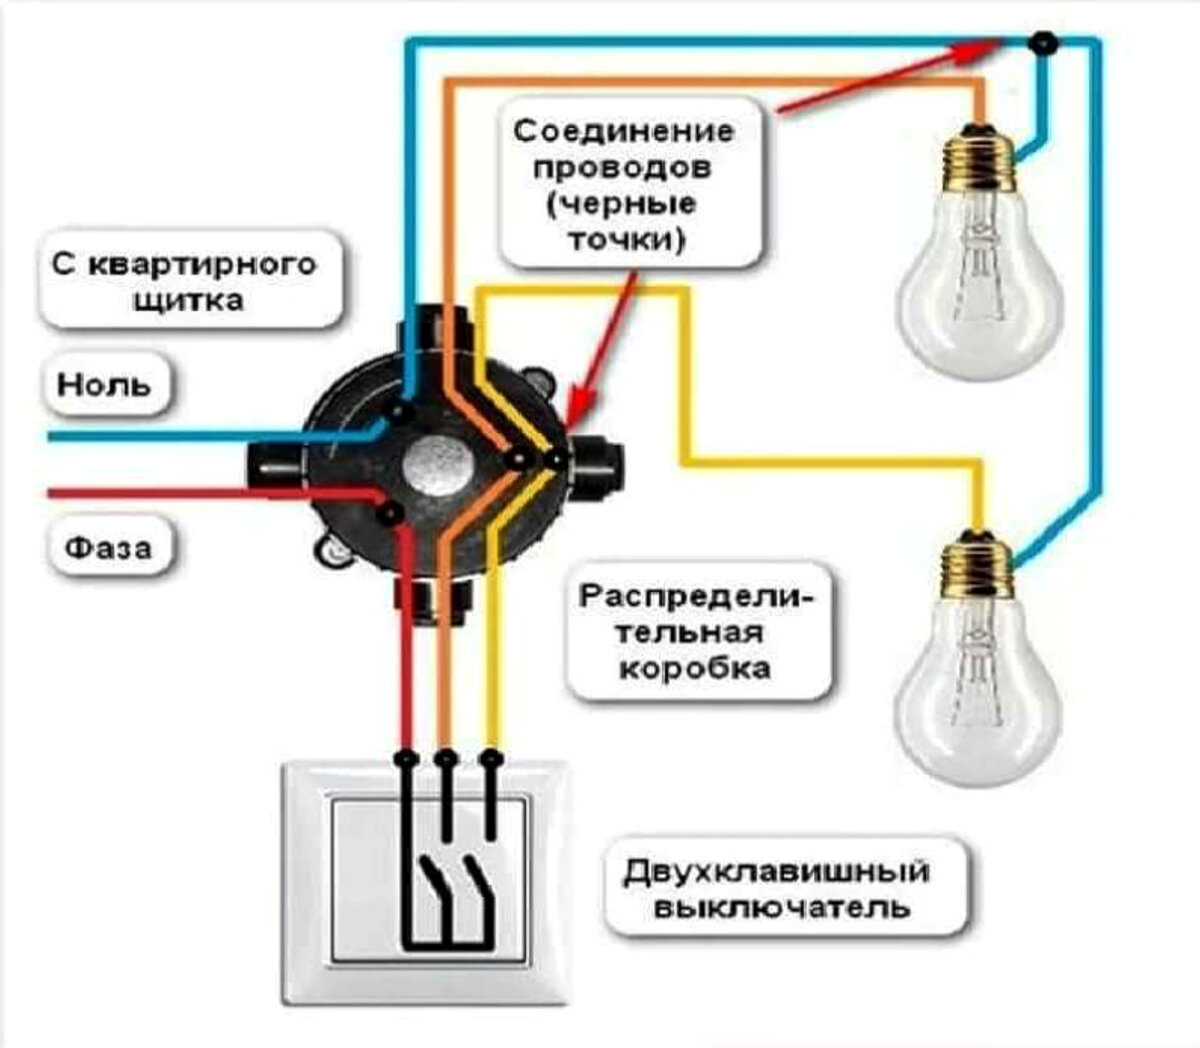 Свет с тремя выключателями. Схема подключения двухклавишный выключатель, 2 лампочки, розетка. Схема подключения двойного провода на 1 выключатель. Схема подключения двойного выключателя с розеткой на 2 лампочки. Как правильно подключить выключатель к лампочке схема подключения.